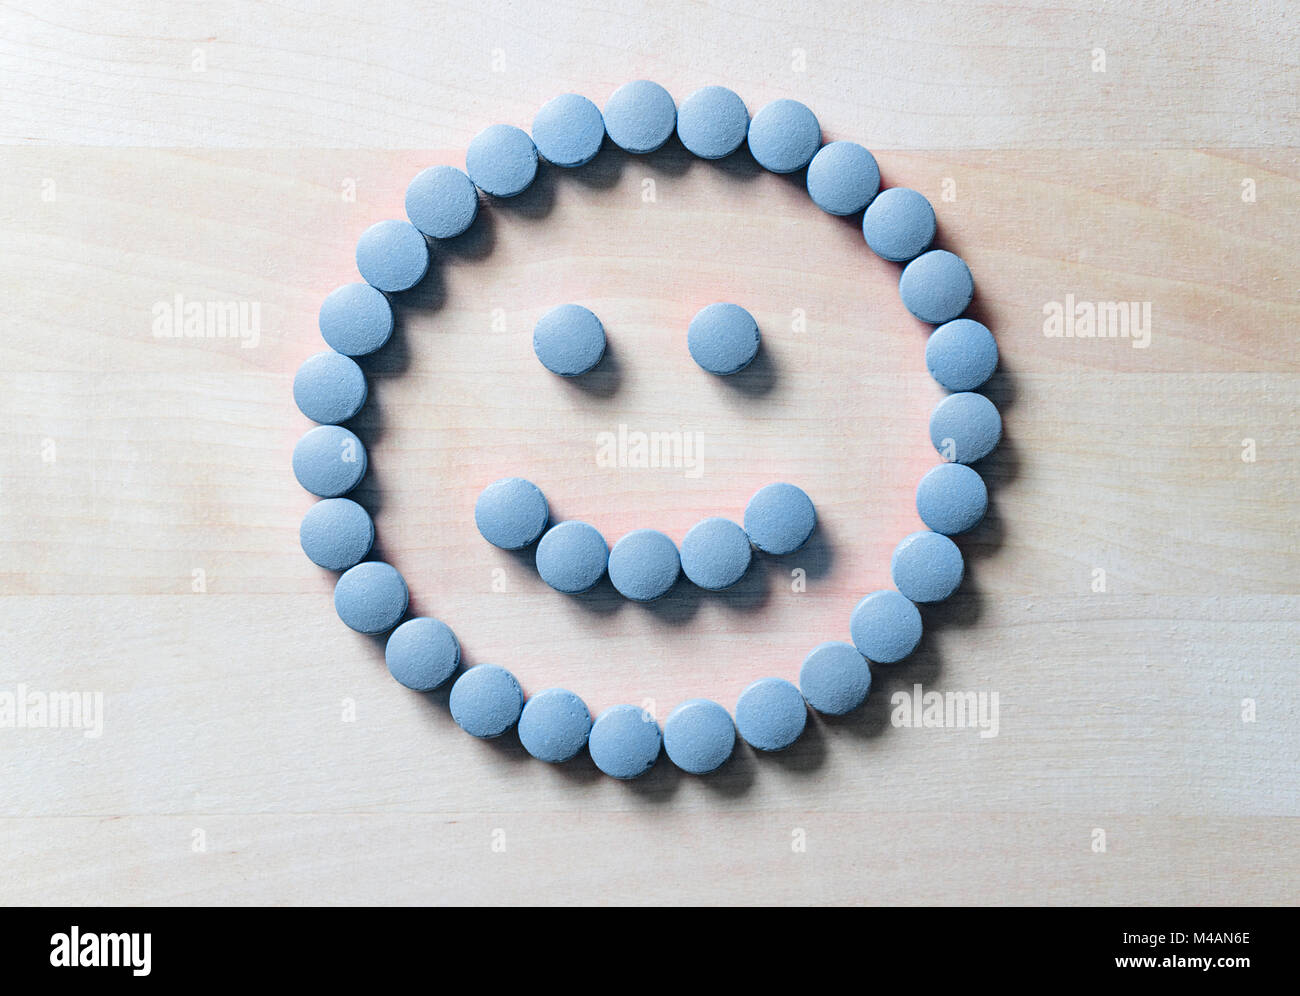 Smiley von Pillen auf Holztisch. Glücklich und positives Gefühl aus der erfolgreichen Heilungsprozess oder Gesundheitsversorgung und Arzt Dienstleistungen zufrieden. Stockfoto